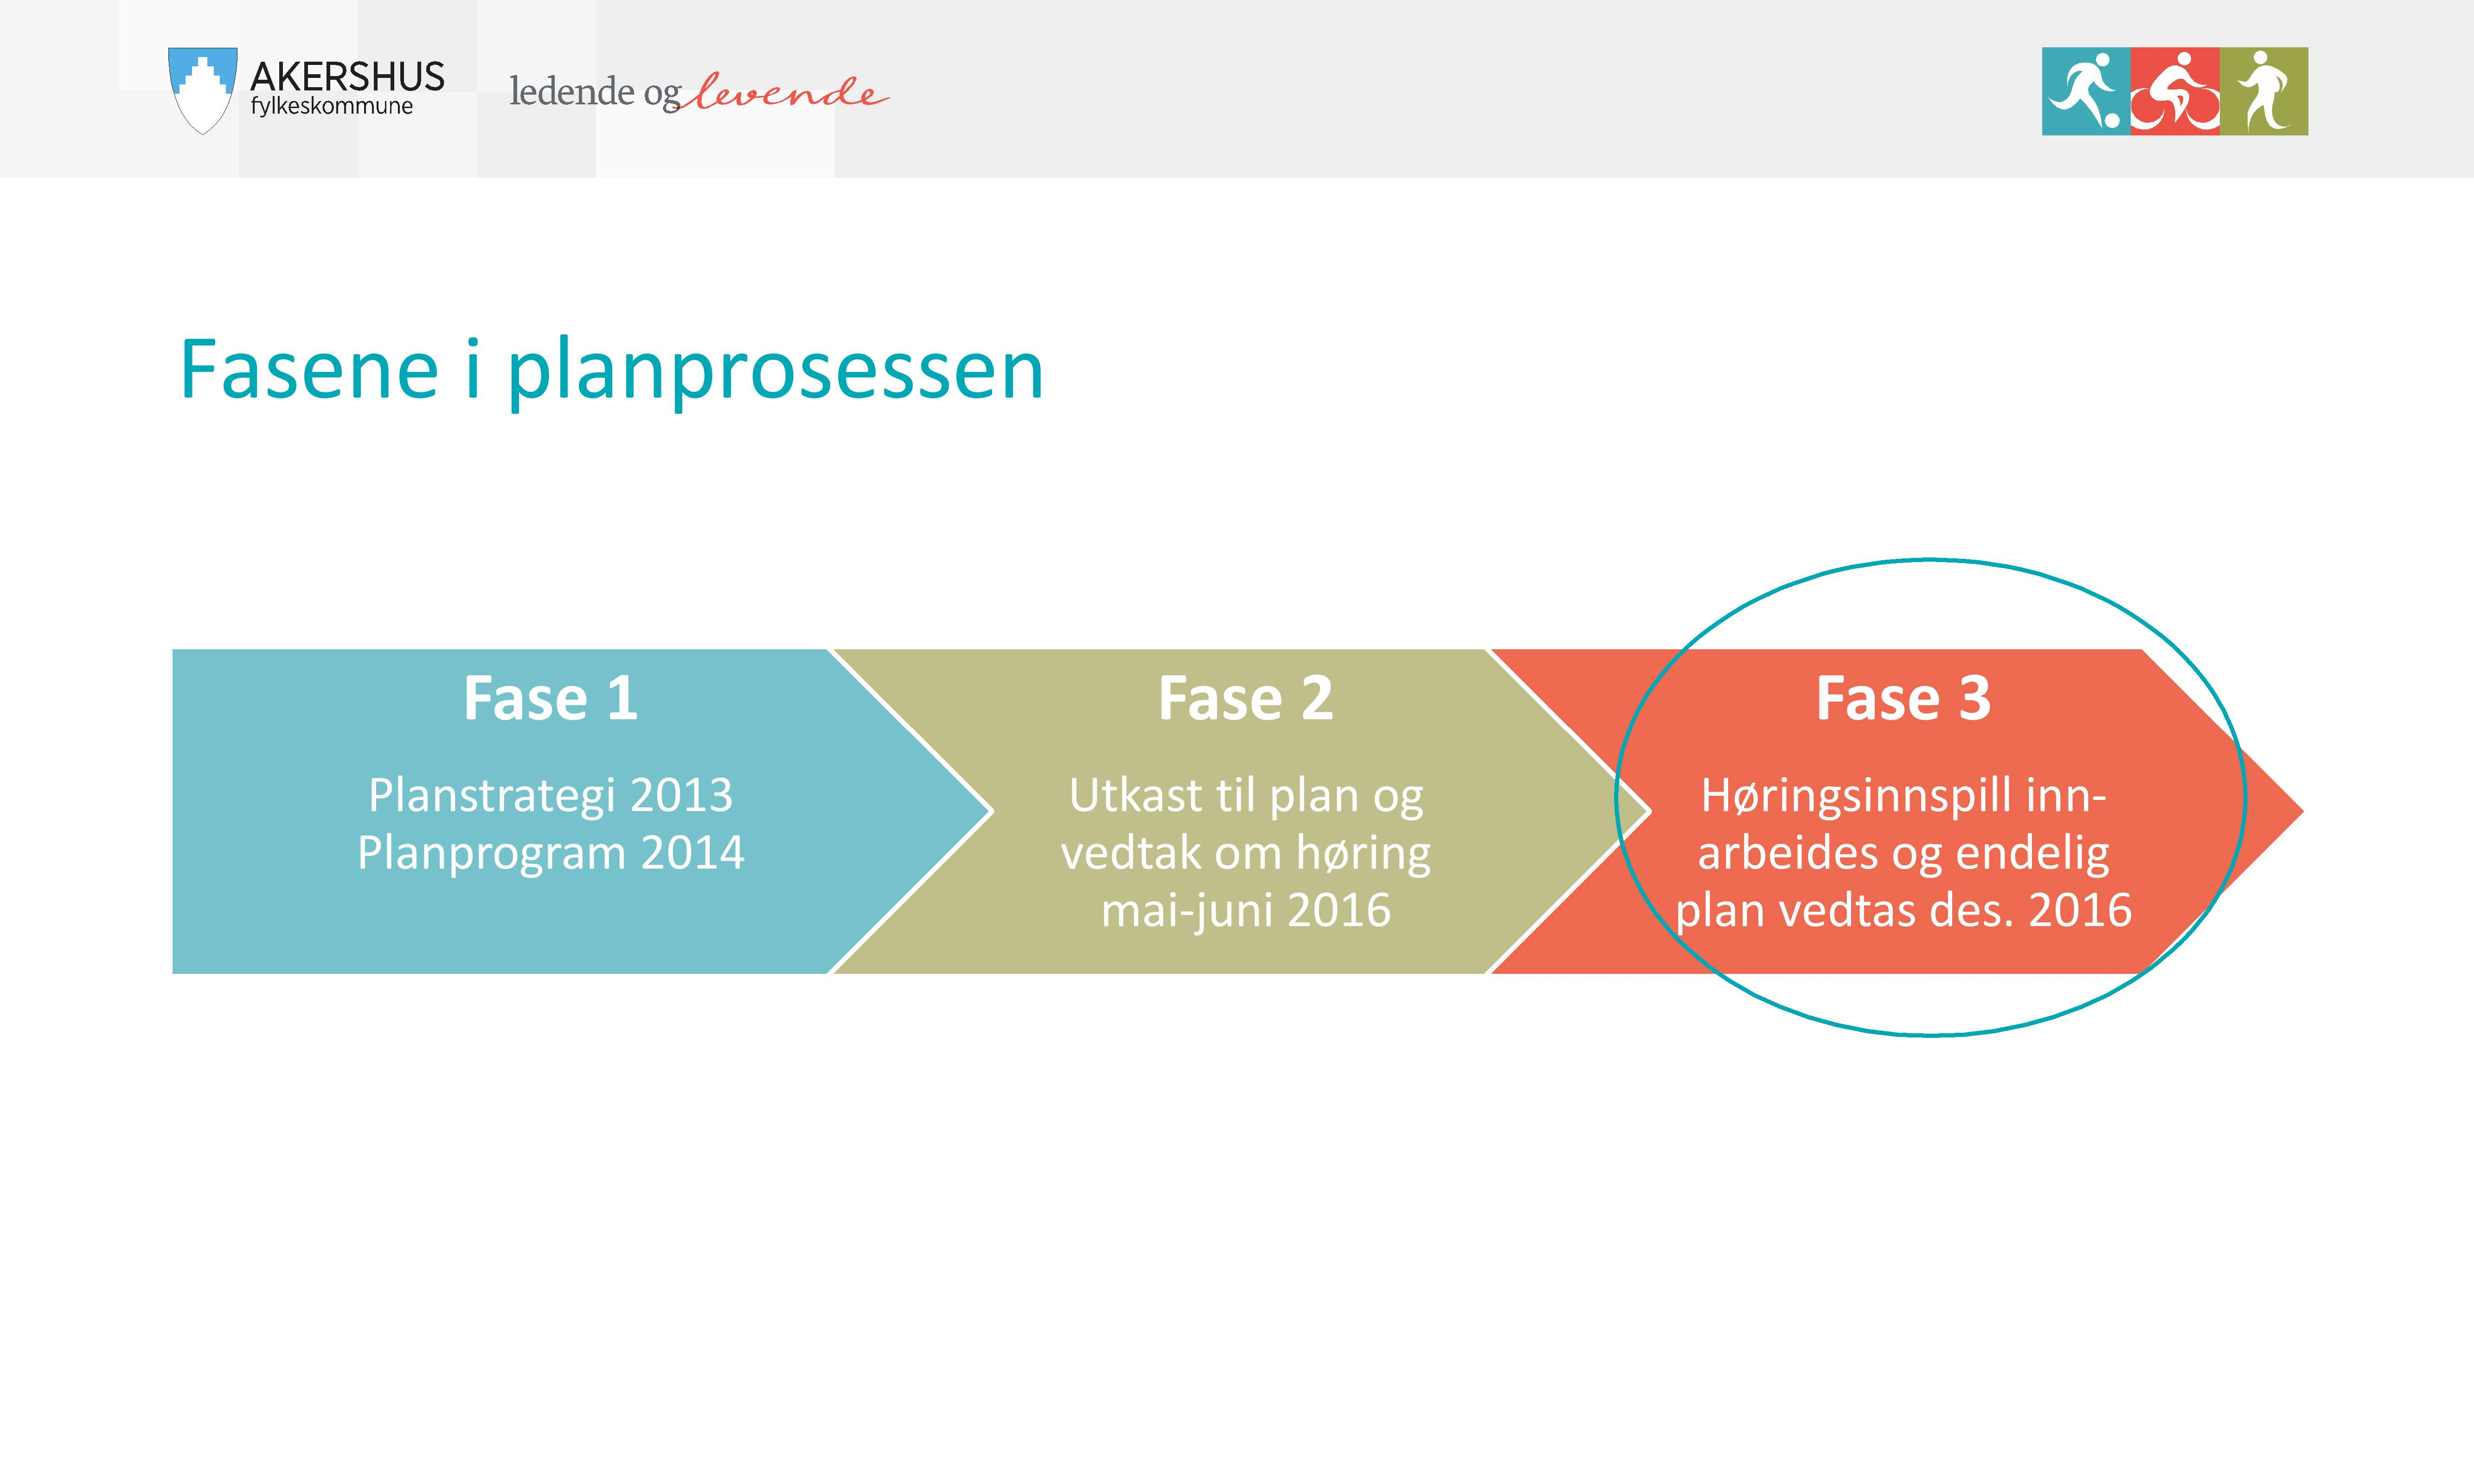 Fasen e i pl an prosessen Fase 1 Planstrategi 2013 Planprogram 2014 Fase 2 Utkast til plan og